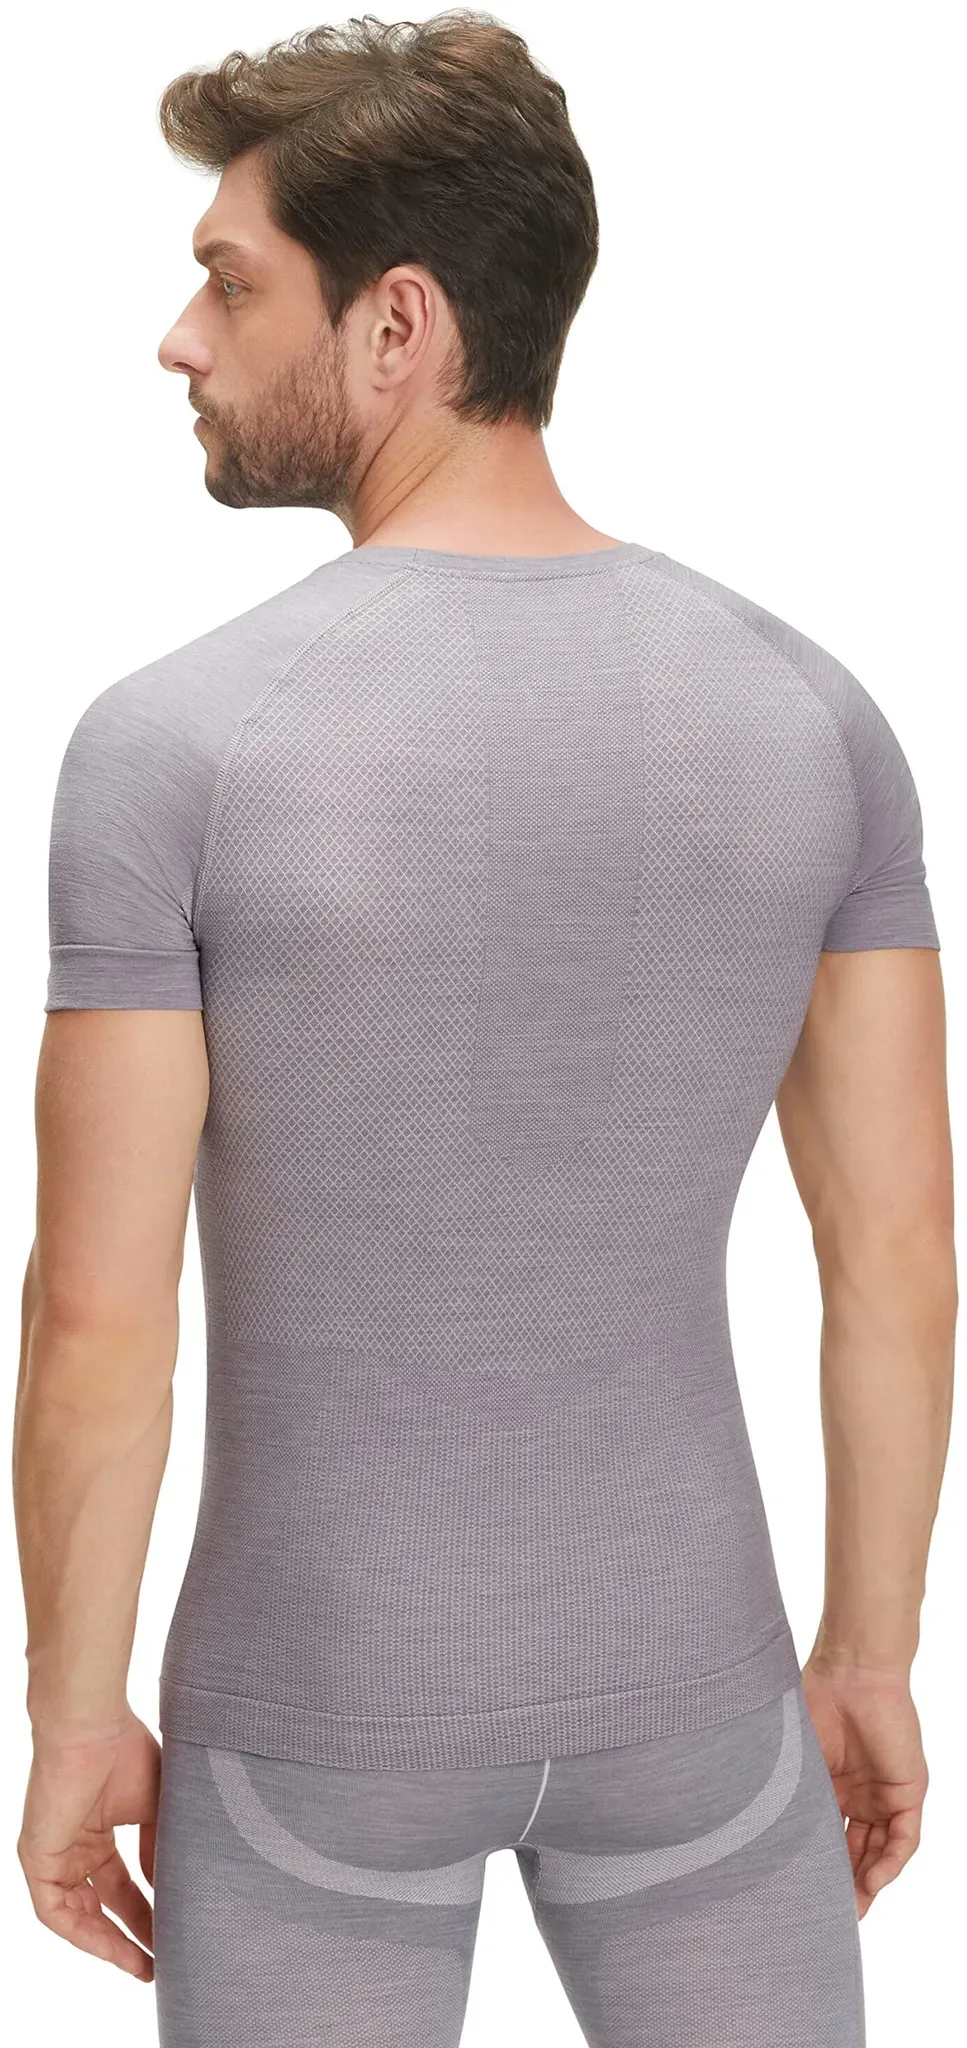 FALKE Herren Baselayer-Shirt Wool-Tech Light Round Neck M S/S SH Wolle Schnelltrocknend 1 Stück, Grau (Grey-Heather 3757), XL